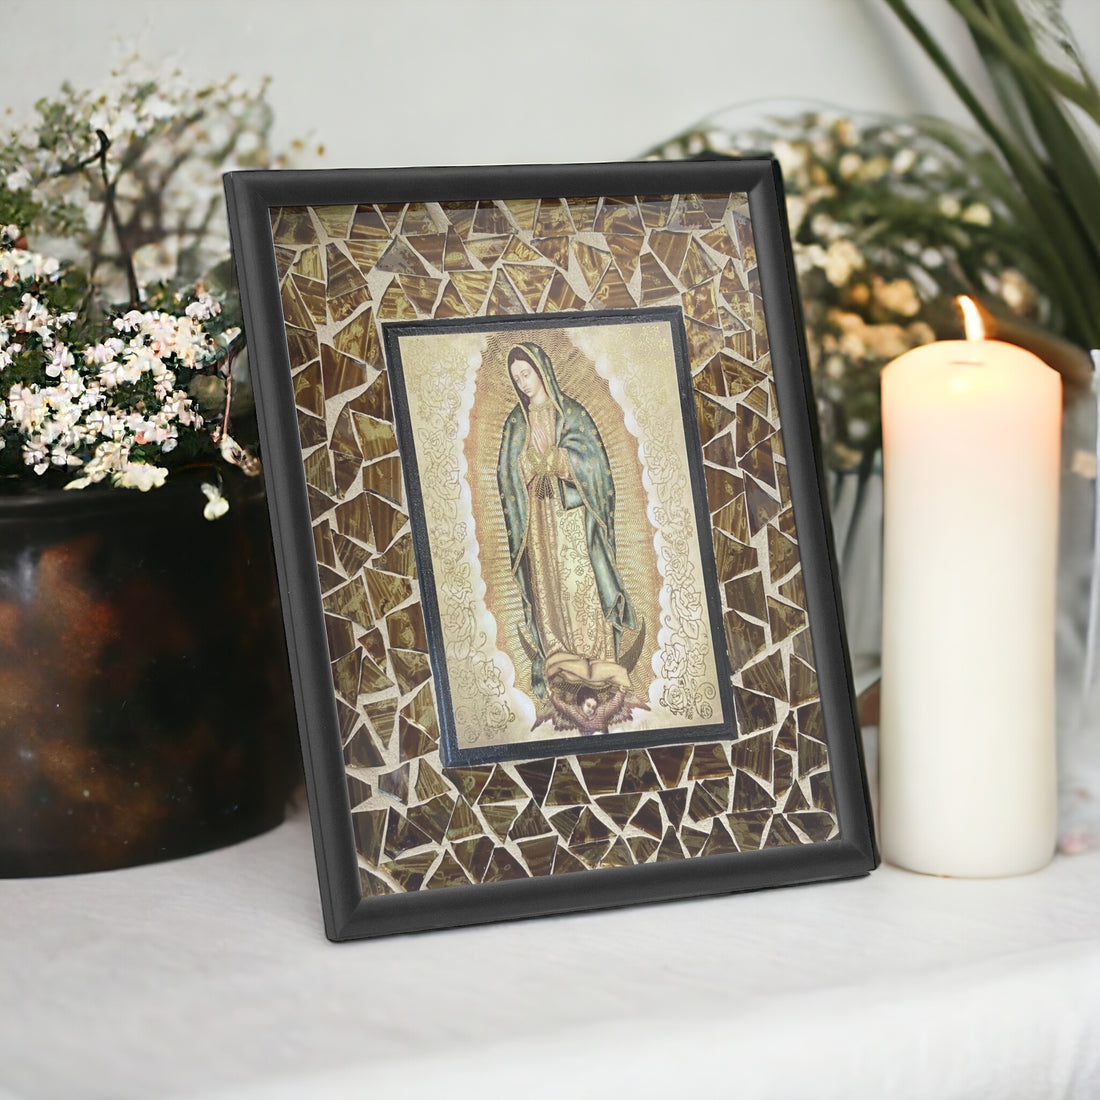 Our Lady of Guadalupe Mosaic Art Catholic Art Catholic Home Decor Framed Virgin Mary, caatholic art, catholic painting, catholic wall decor, virgin mary art, virgin mary picture, virgin mary mosaic, st mary art, st mary painting